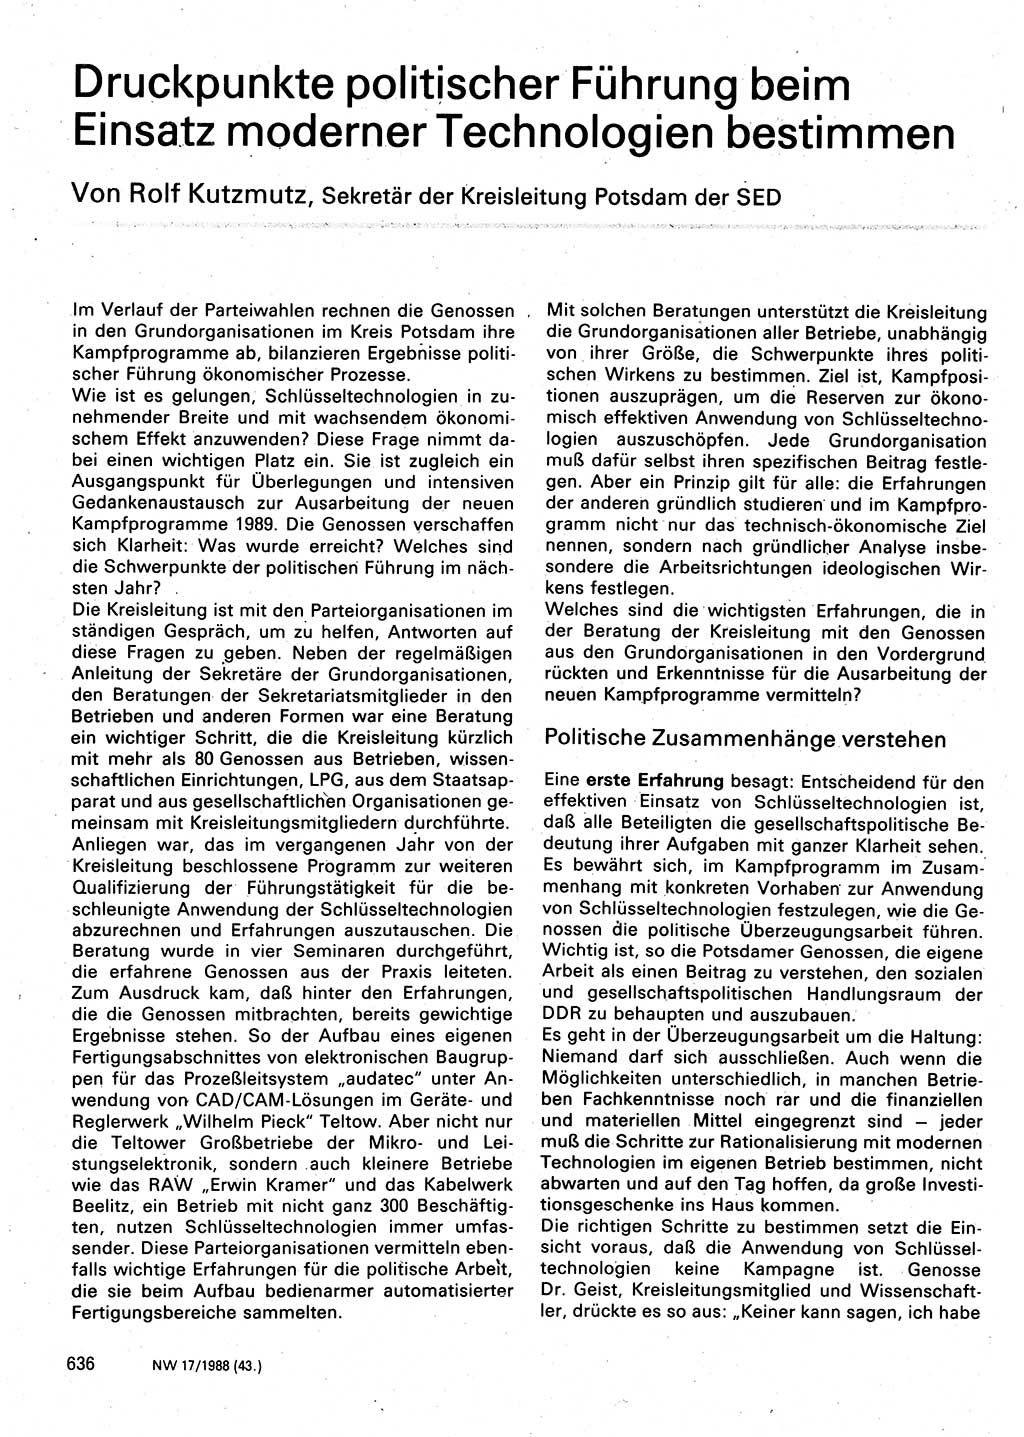 Neuer Weg (NW), Organ des Zentralkomitees (ZK) der SED (Sozialistische Einheitspartei Deutschlands) für Fragen des Parteilebens, 43. Jahrgang [Deutsche Demokratische Republik (DDR)] 1988, Seite 636 (NW ZK SED DDR 1988, S. 636)